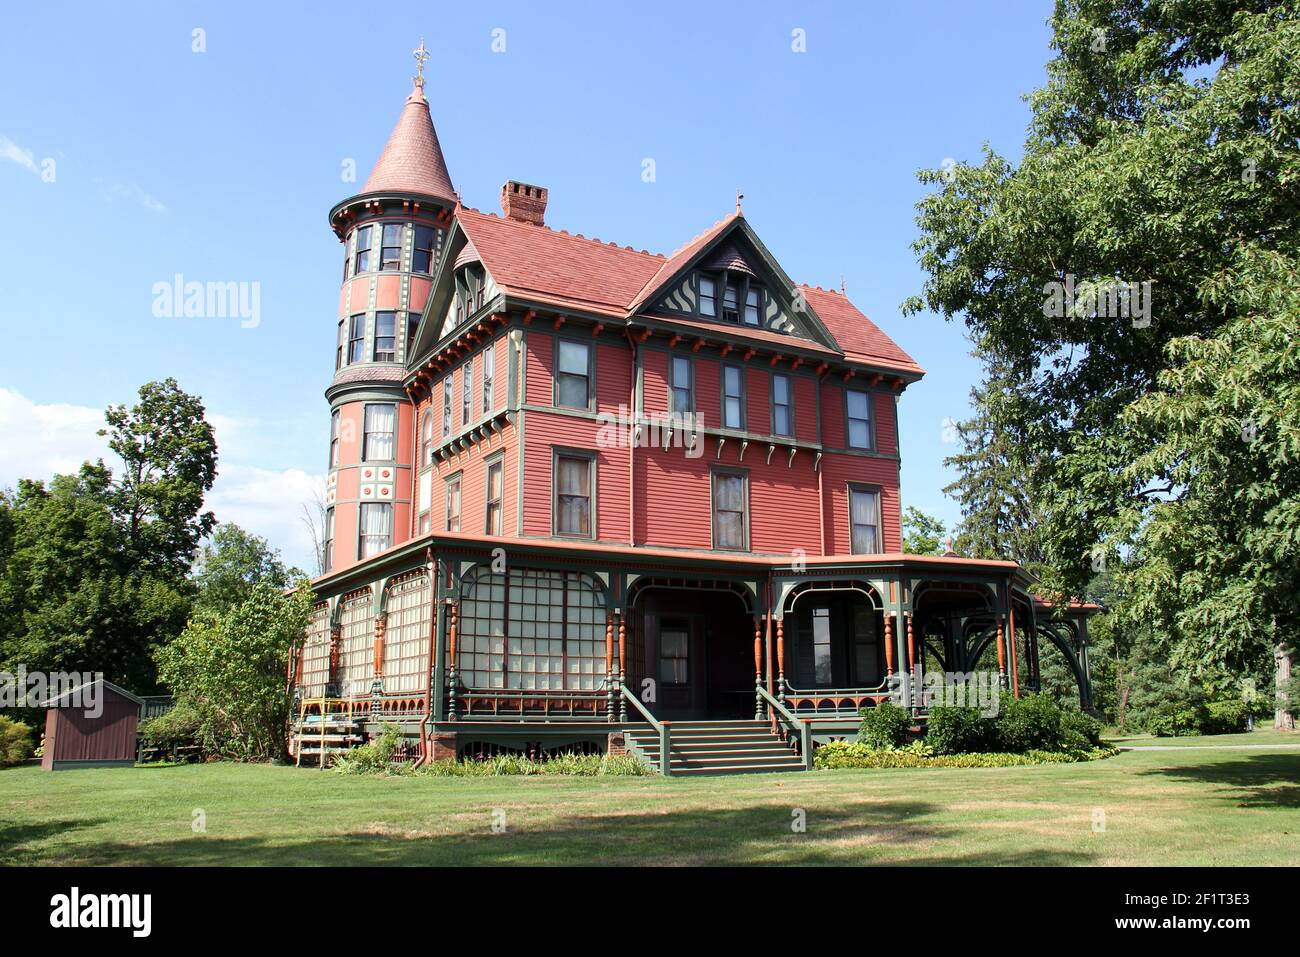 Wilderstein Mansion, maison de campagne du XIXe siècle de style Queen-Anne sur l'Hudson River, Rhinebeck, NY, États-Unis Banque D'Images